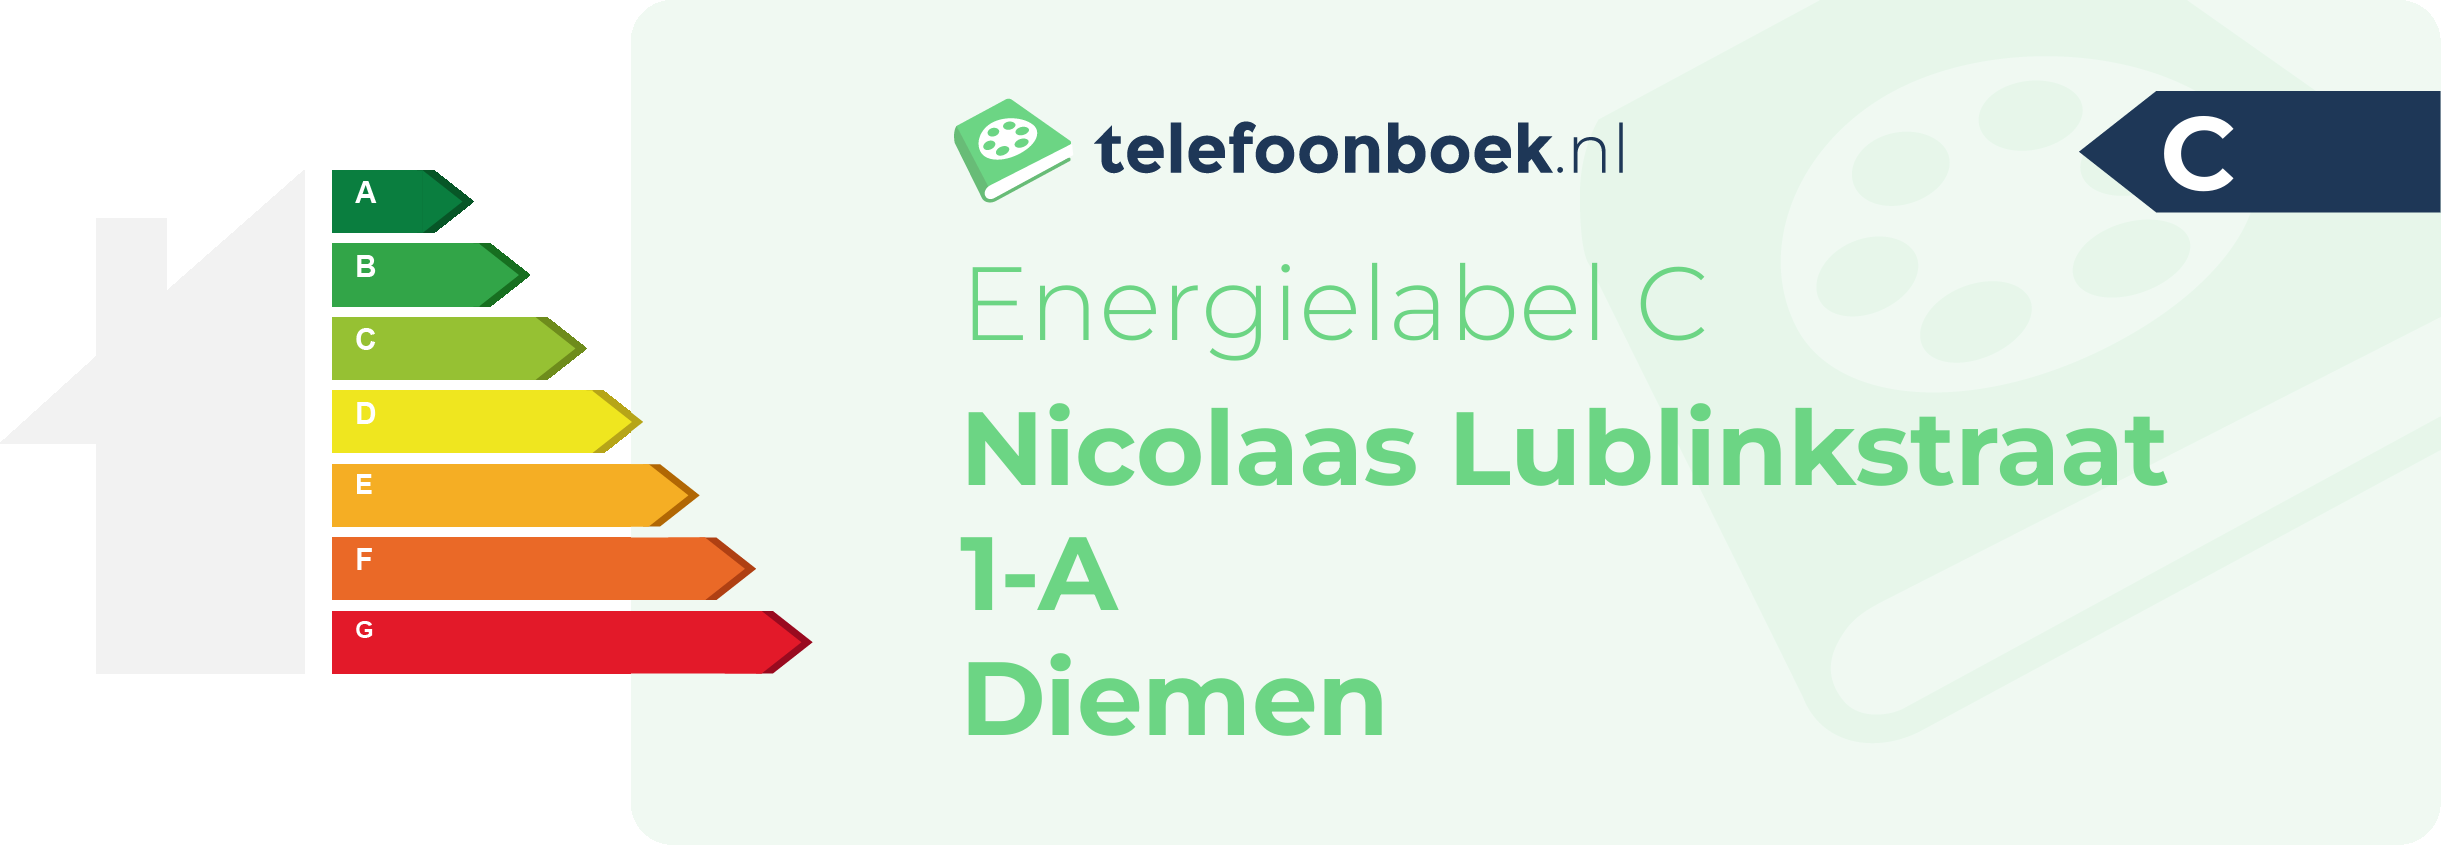 Energielabel Nicolaas Lublinkstraat 1-A Diemen